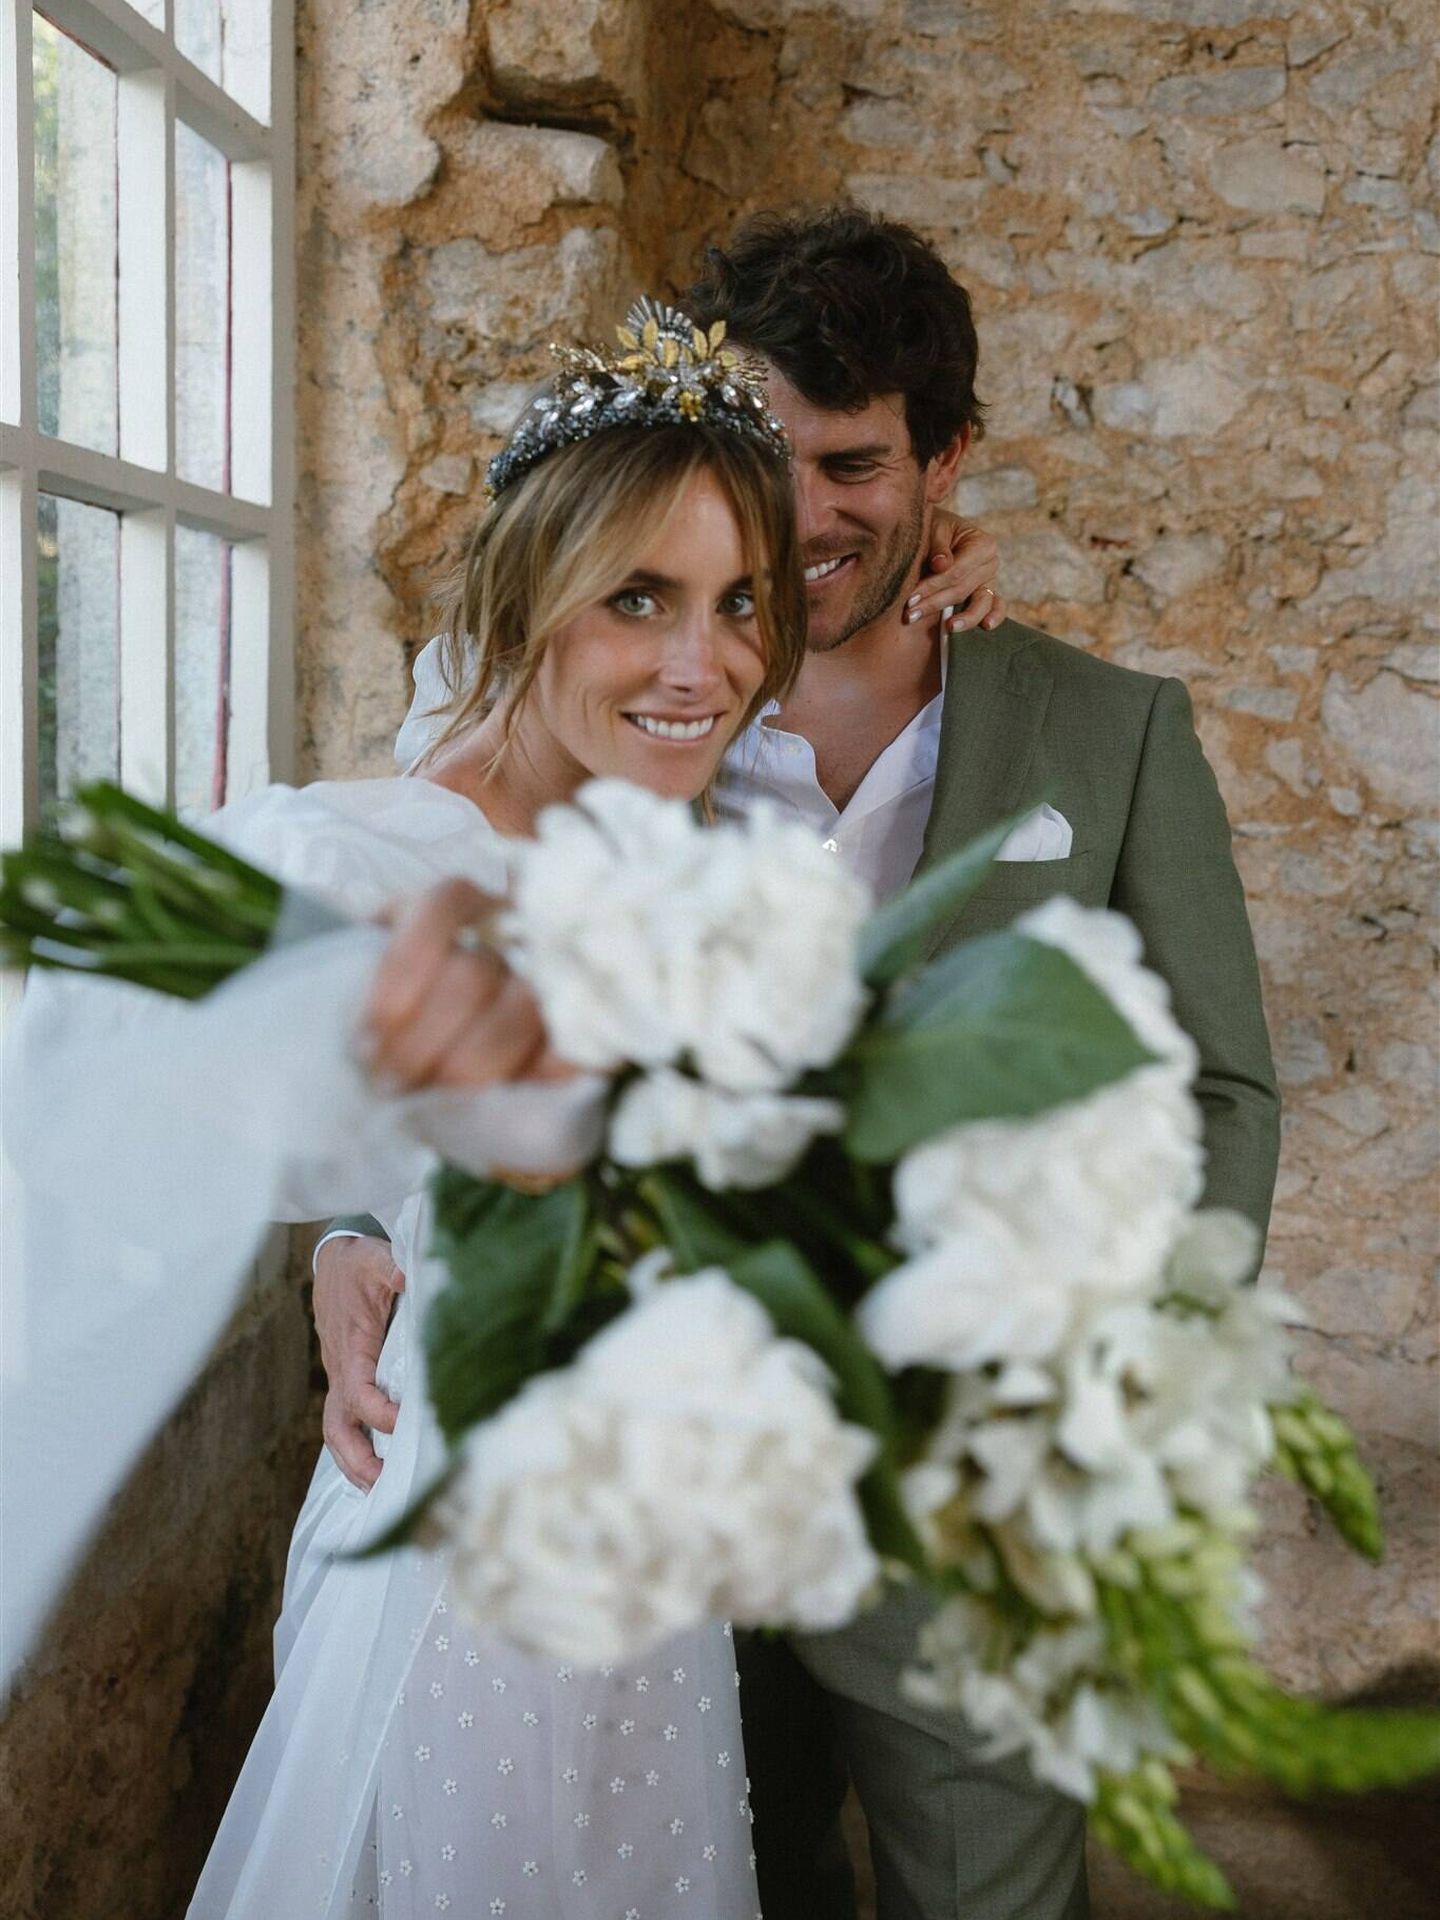 La boda de Marisa en Portugal. (Diego de Rando/ Derando Studio Wedding)